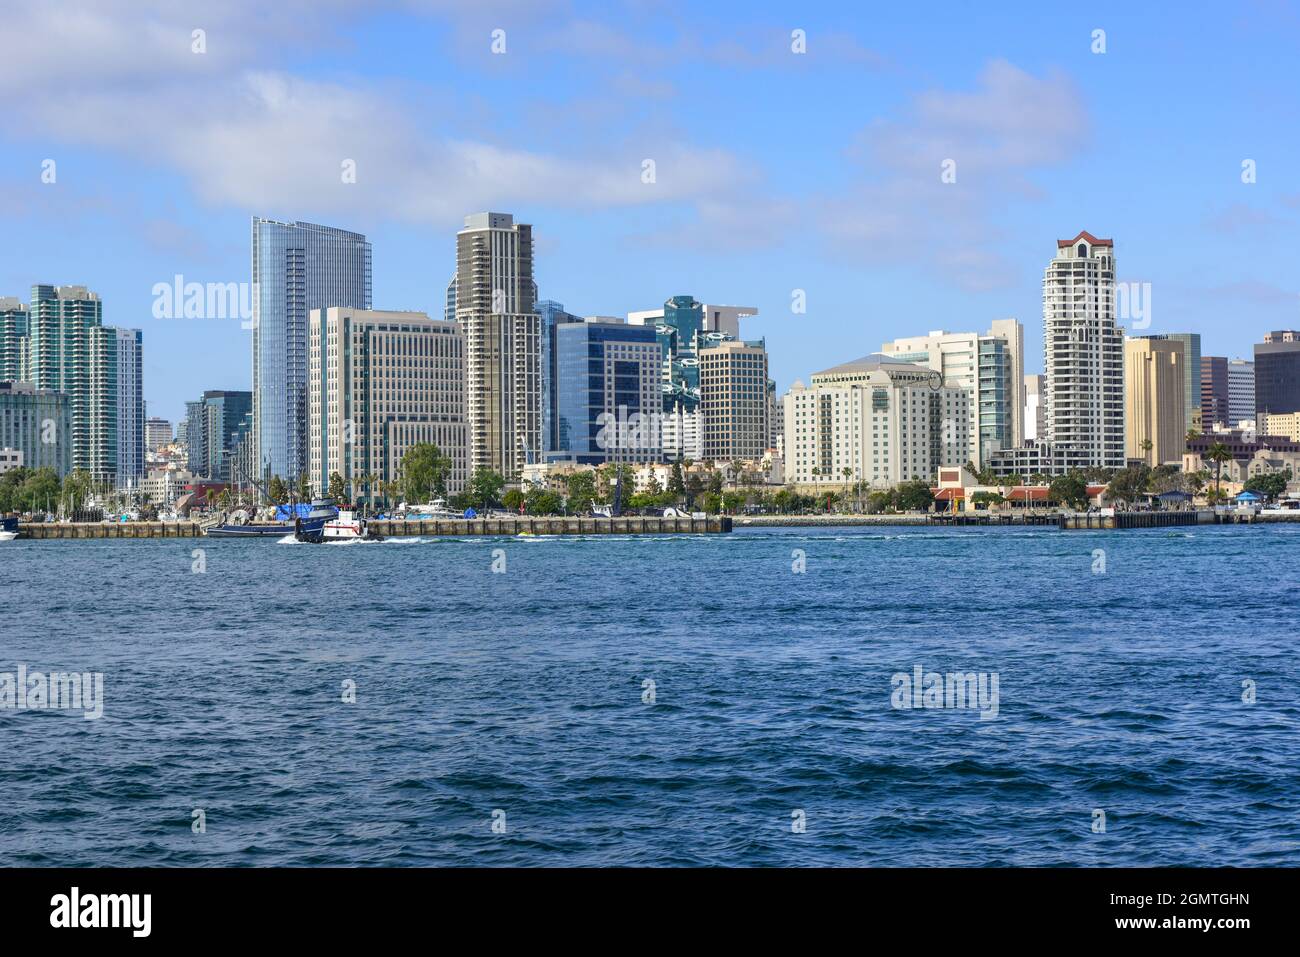 Un impressionante skyline del centro cittadino di San Diego con alti edifici moderni che si affacciano dalla Baia di San Diego vicino all'Isola di Coronado nella California Meridionale Foto Stock